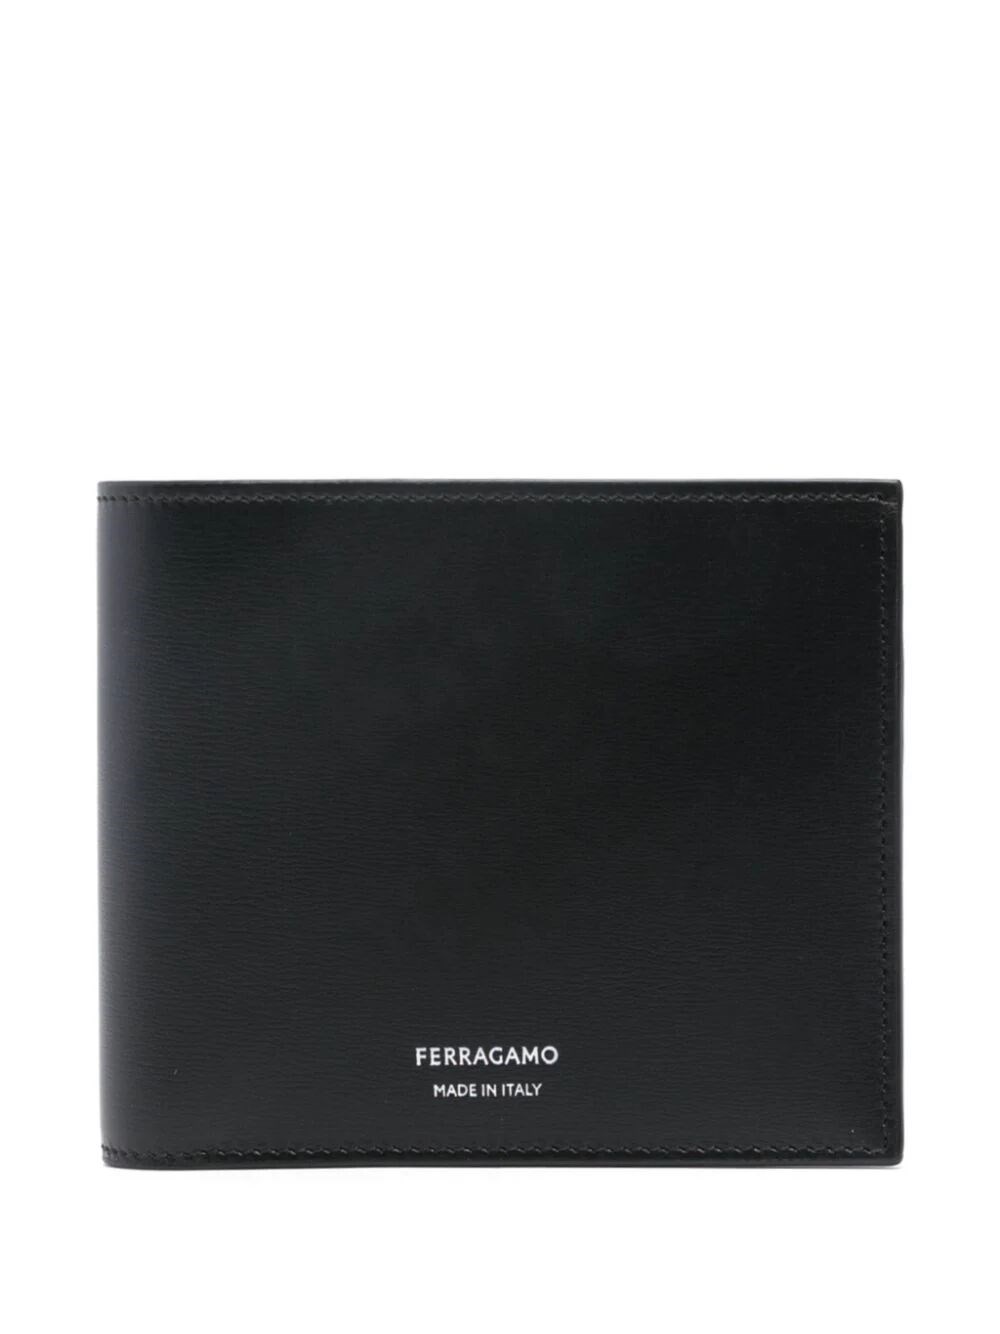 Ferragamo Leather Bi-fold Wallet In Black